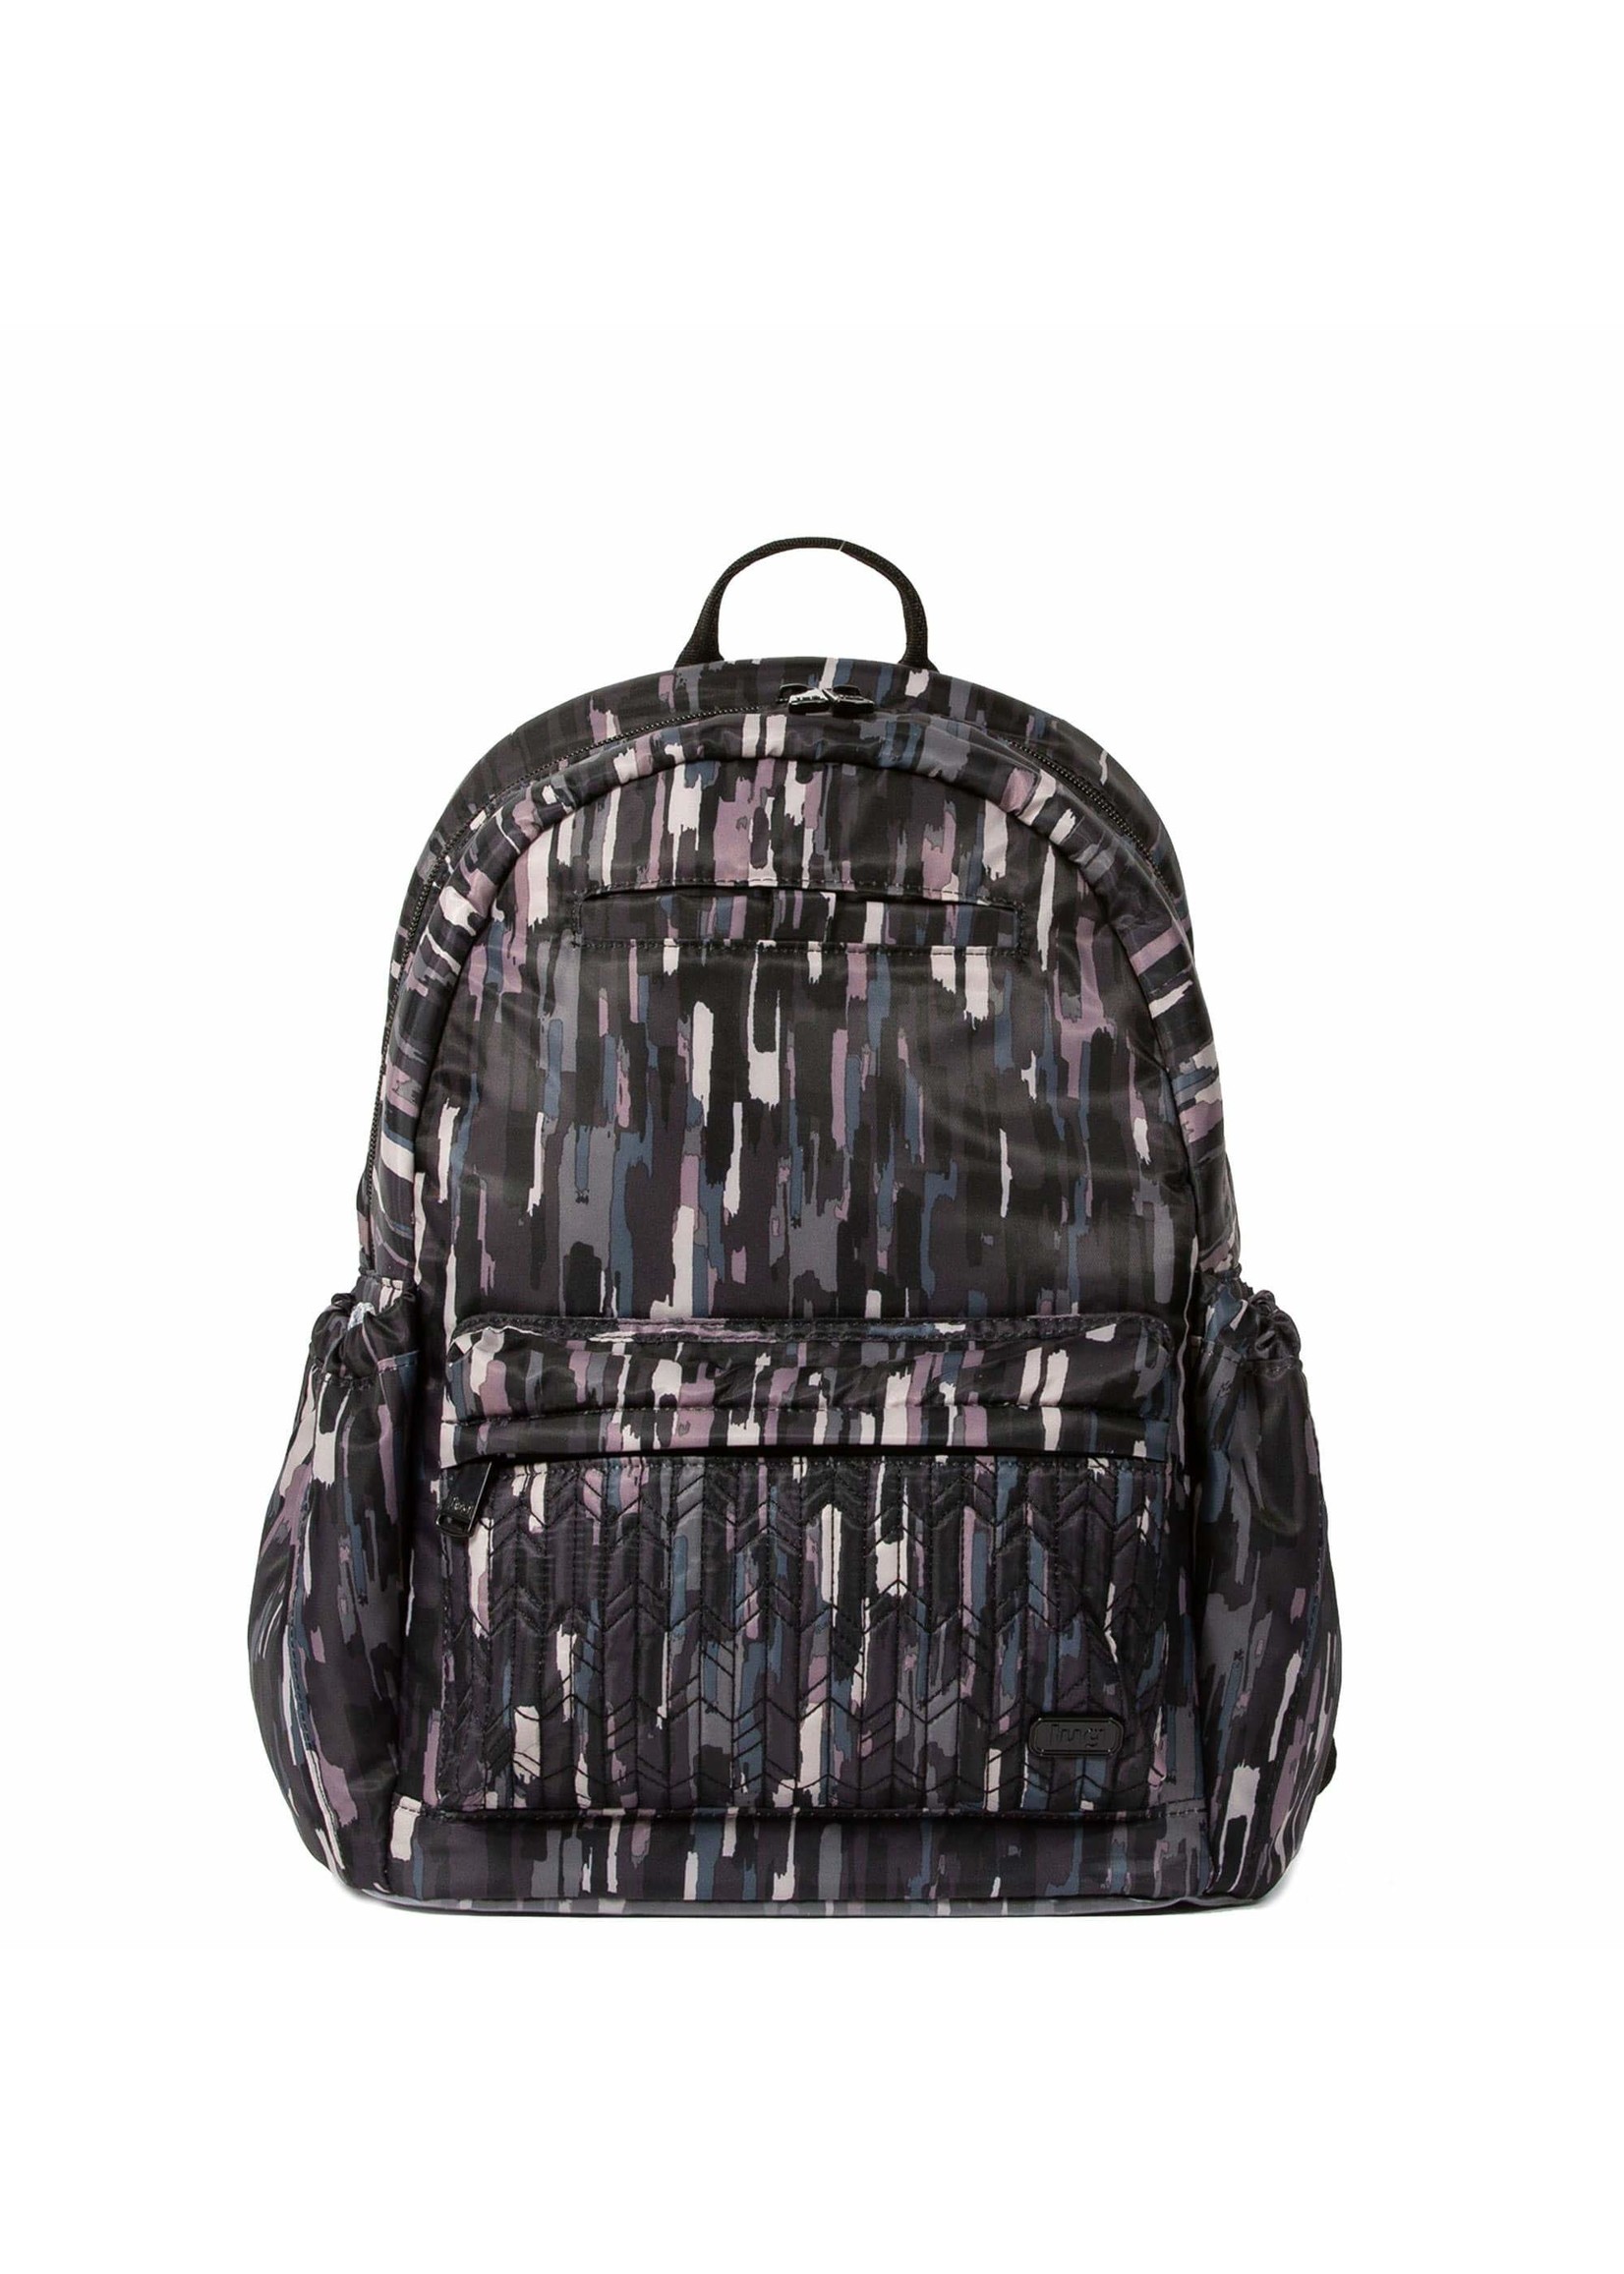 Lug Orbit Backpack - PICK UP ONLY